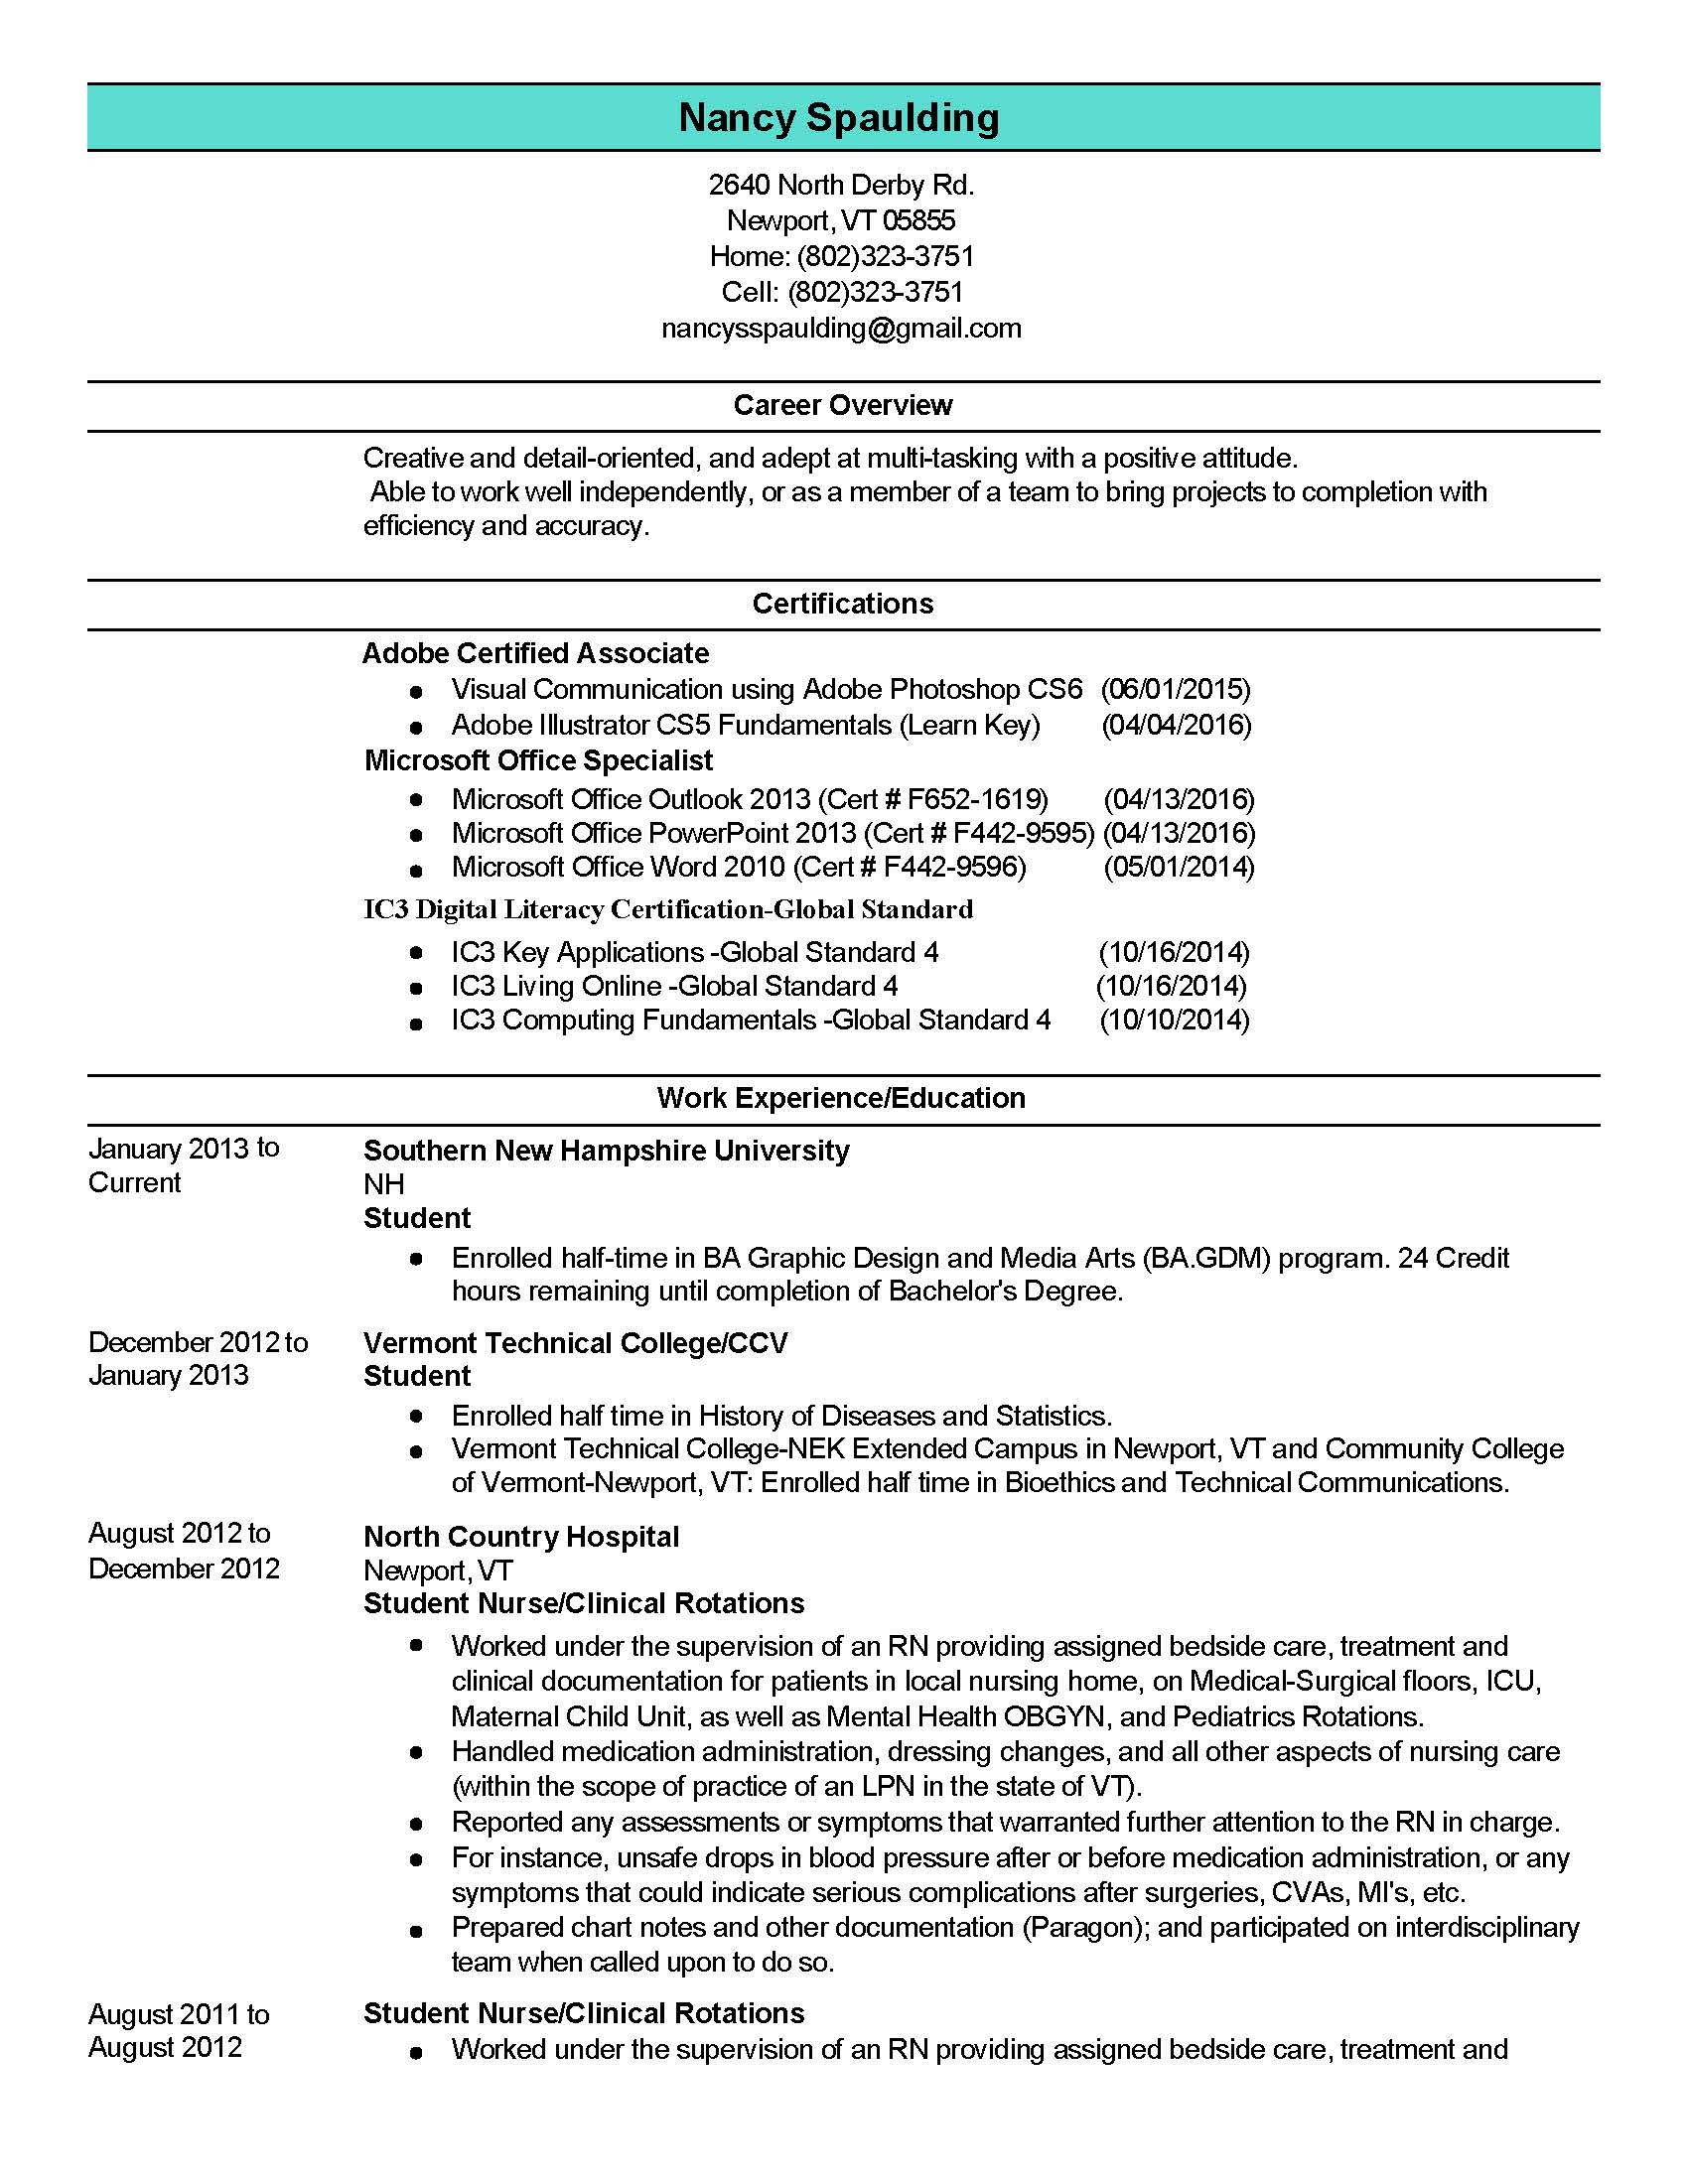 Nancy Spaulding Resume Page 1